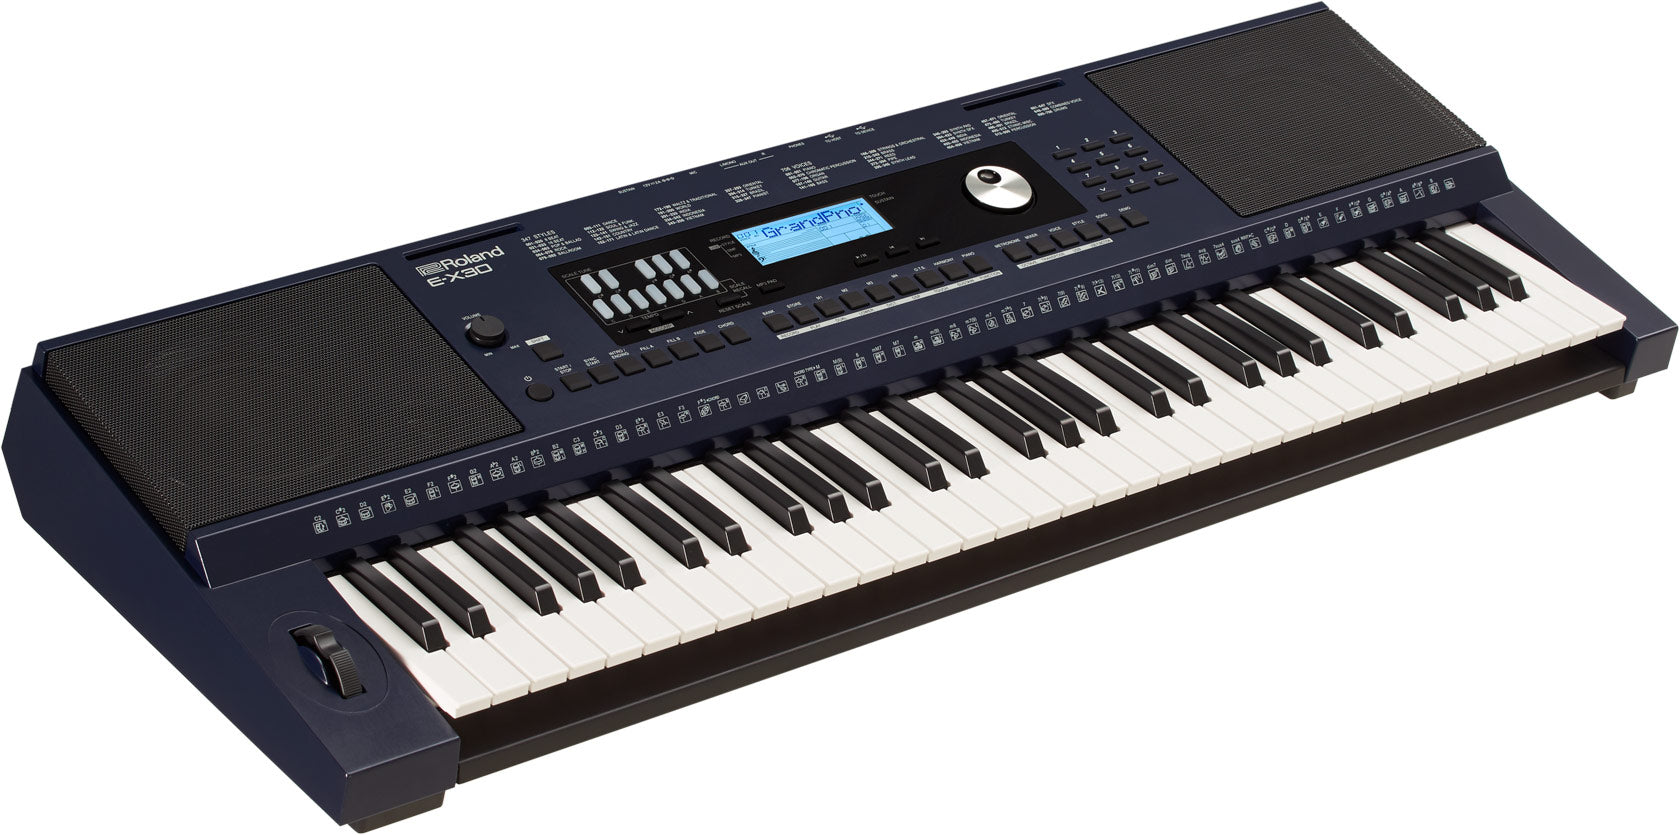 Roland E-X30 編曲鍵盤